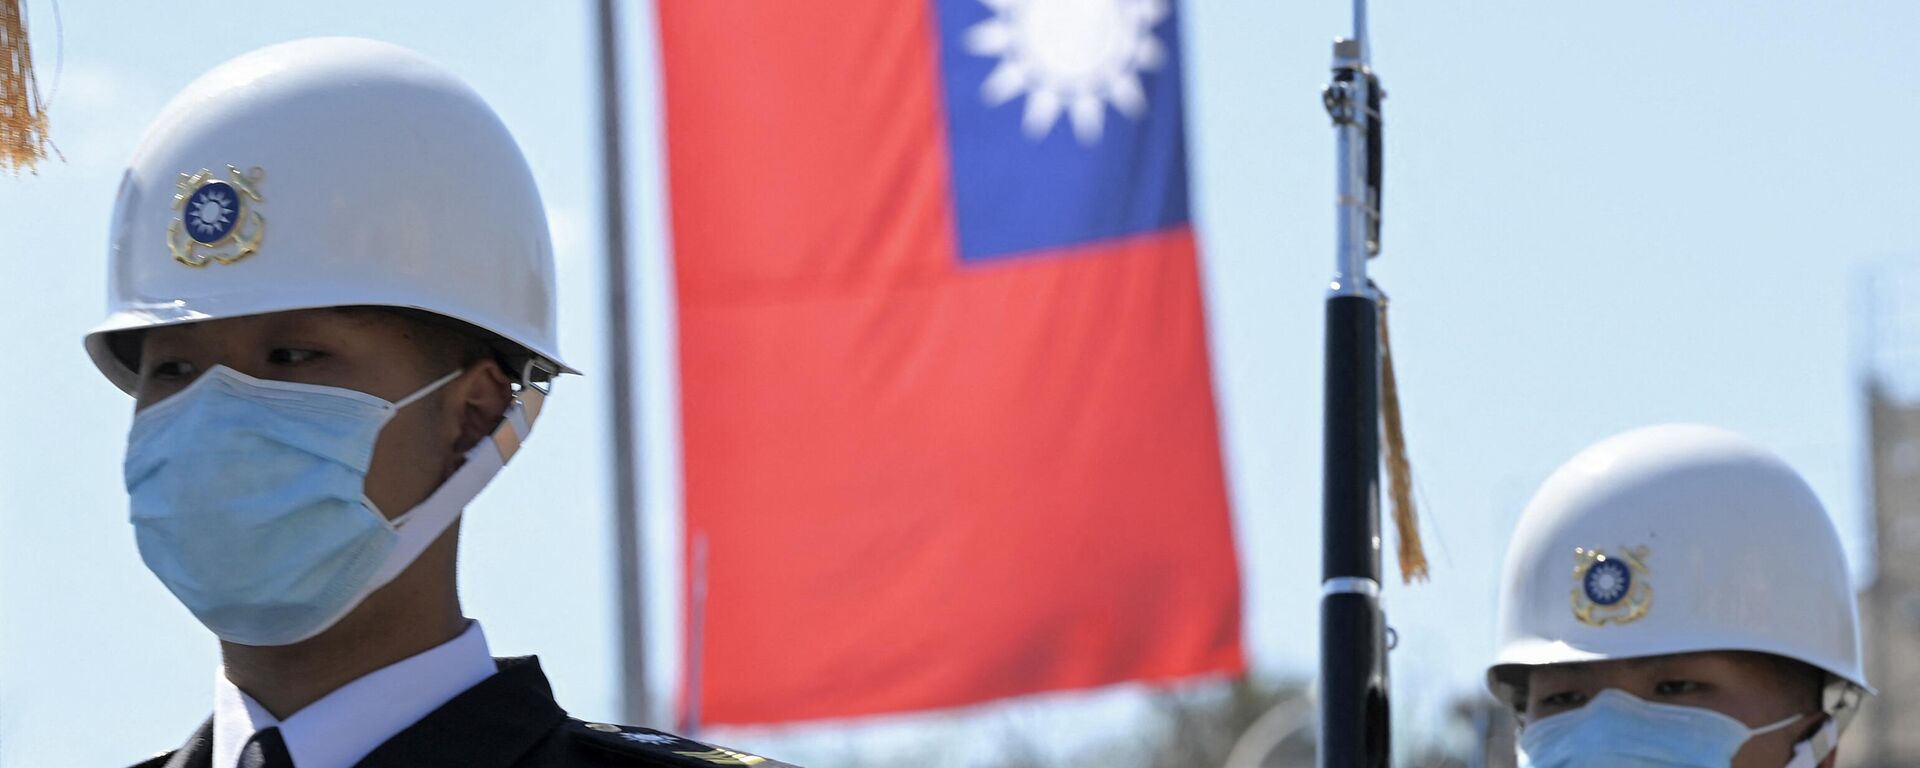 Guardas de honra em frente de bandeira taiwanesa durante cerimônia militar com John Briceno, primeiro-ministro de Belize (fora da foto), em frente ao escritório presidencial em Taipé, Taiwan, 9 de março de 2022 - Sputnik Brasil, 1920, 03.05.2022